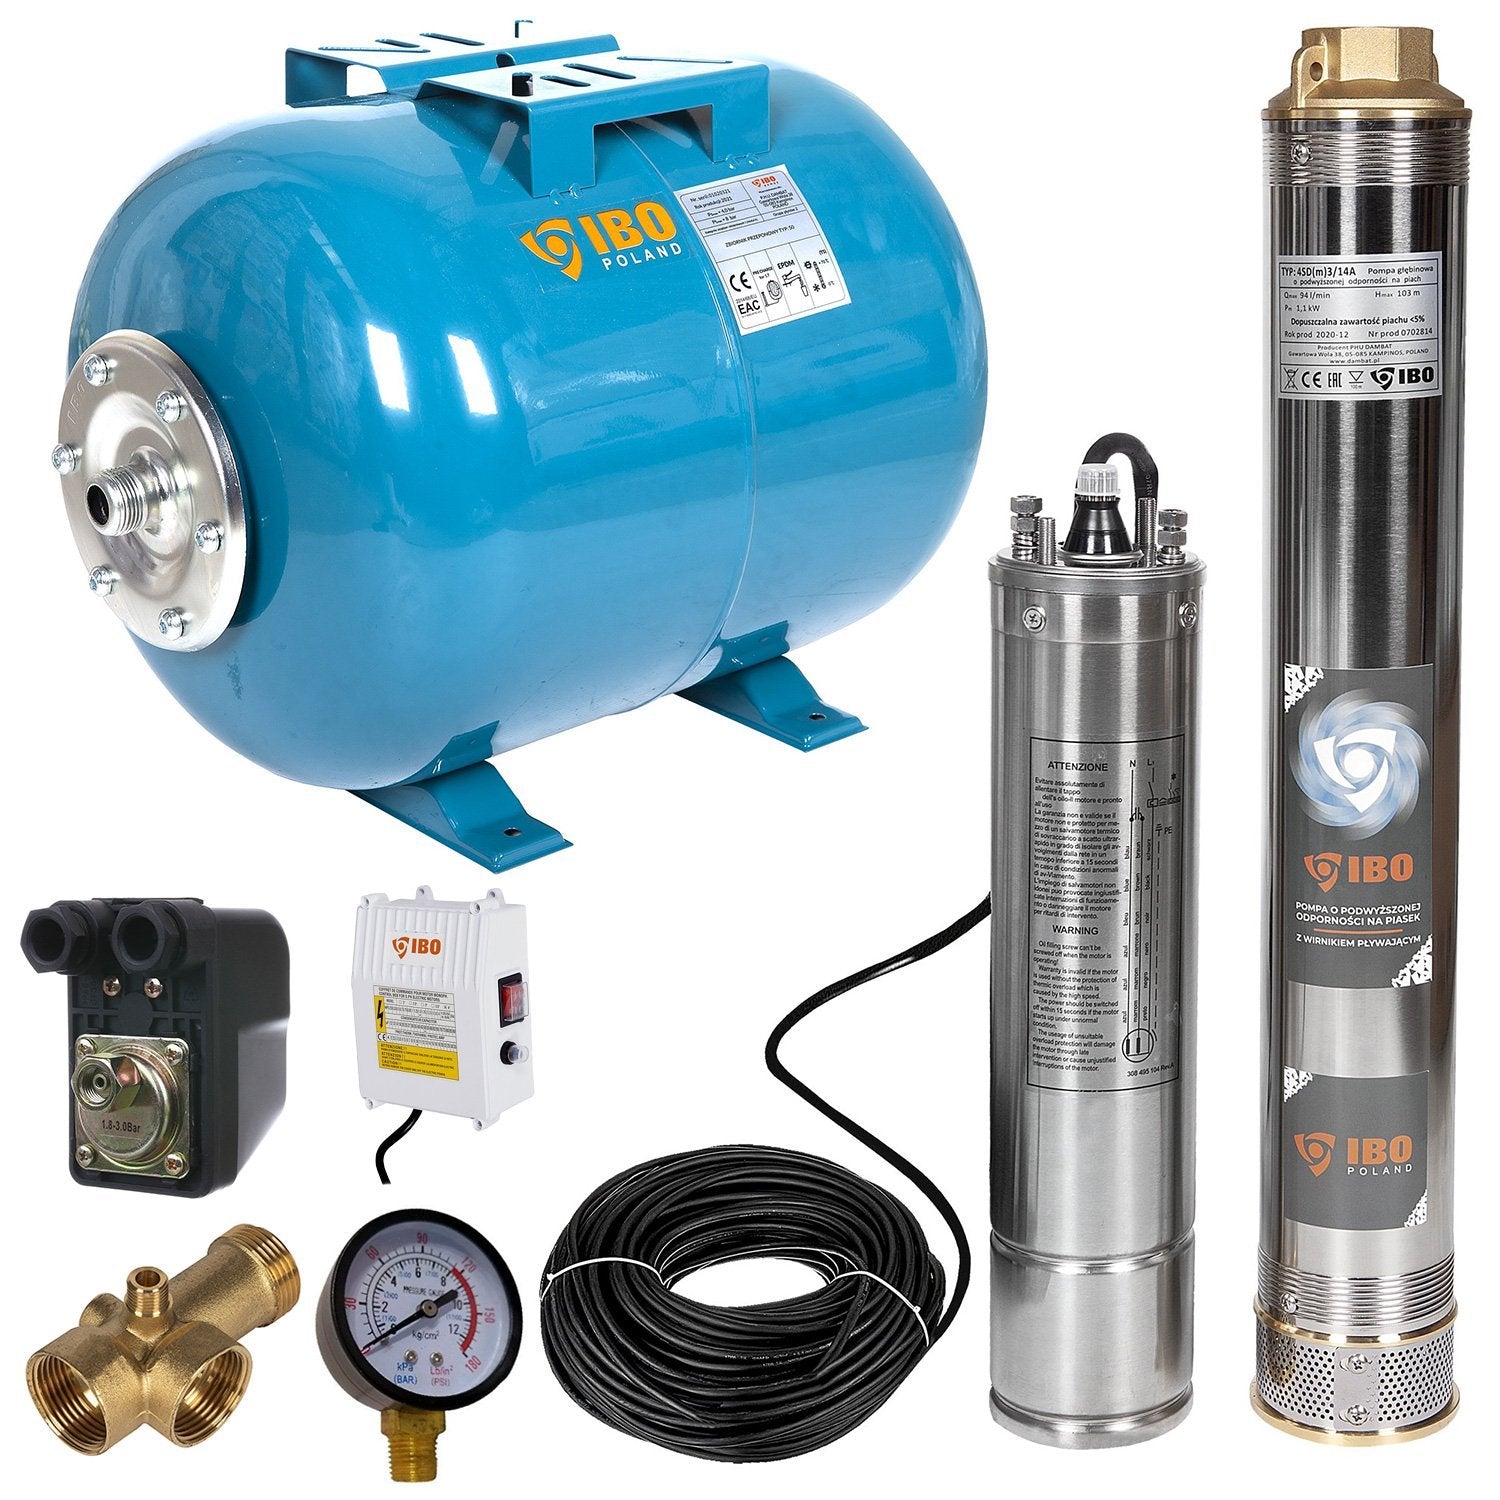 Kit hidrofor 24L cu pompa submersibila IBO Dambat 4SDM3/14, 1.1kW, debit 94l/min, H refulare 103m, racord 1.5", rezistenta la nisip